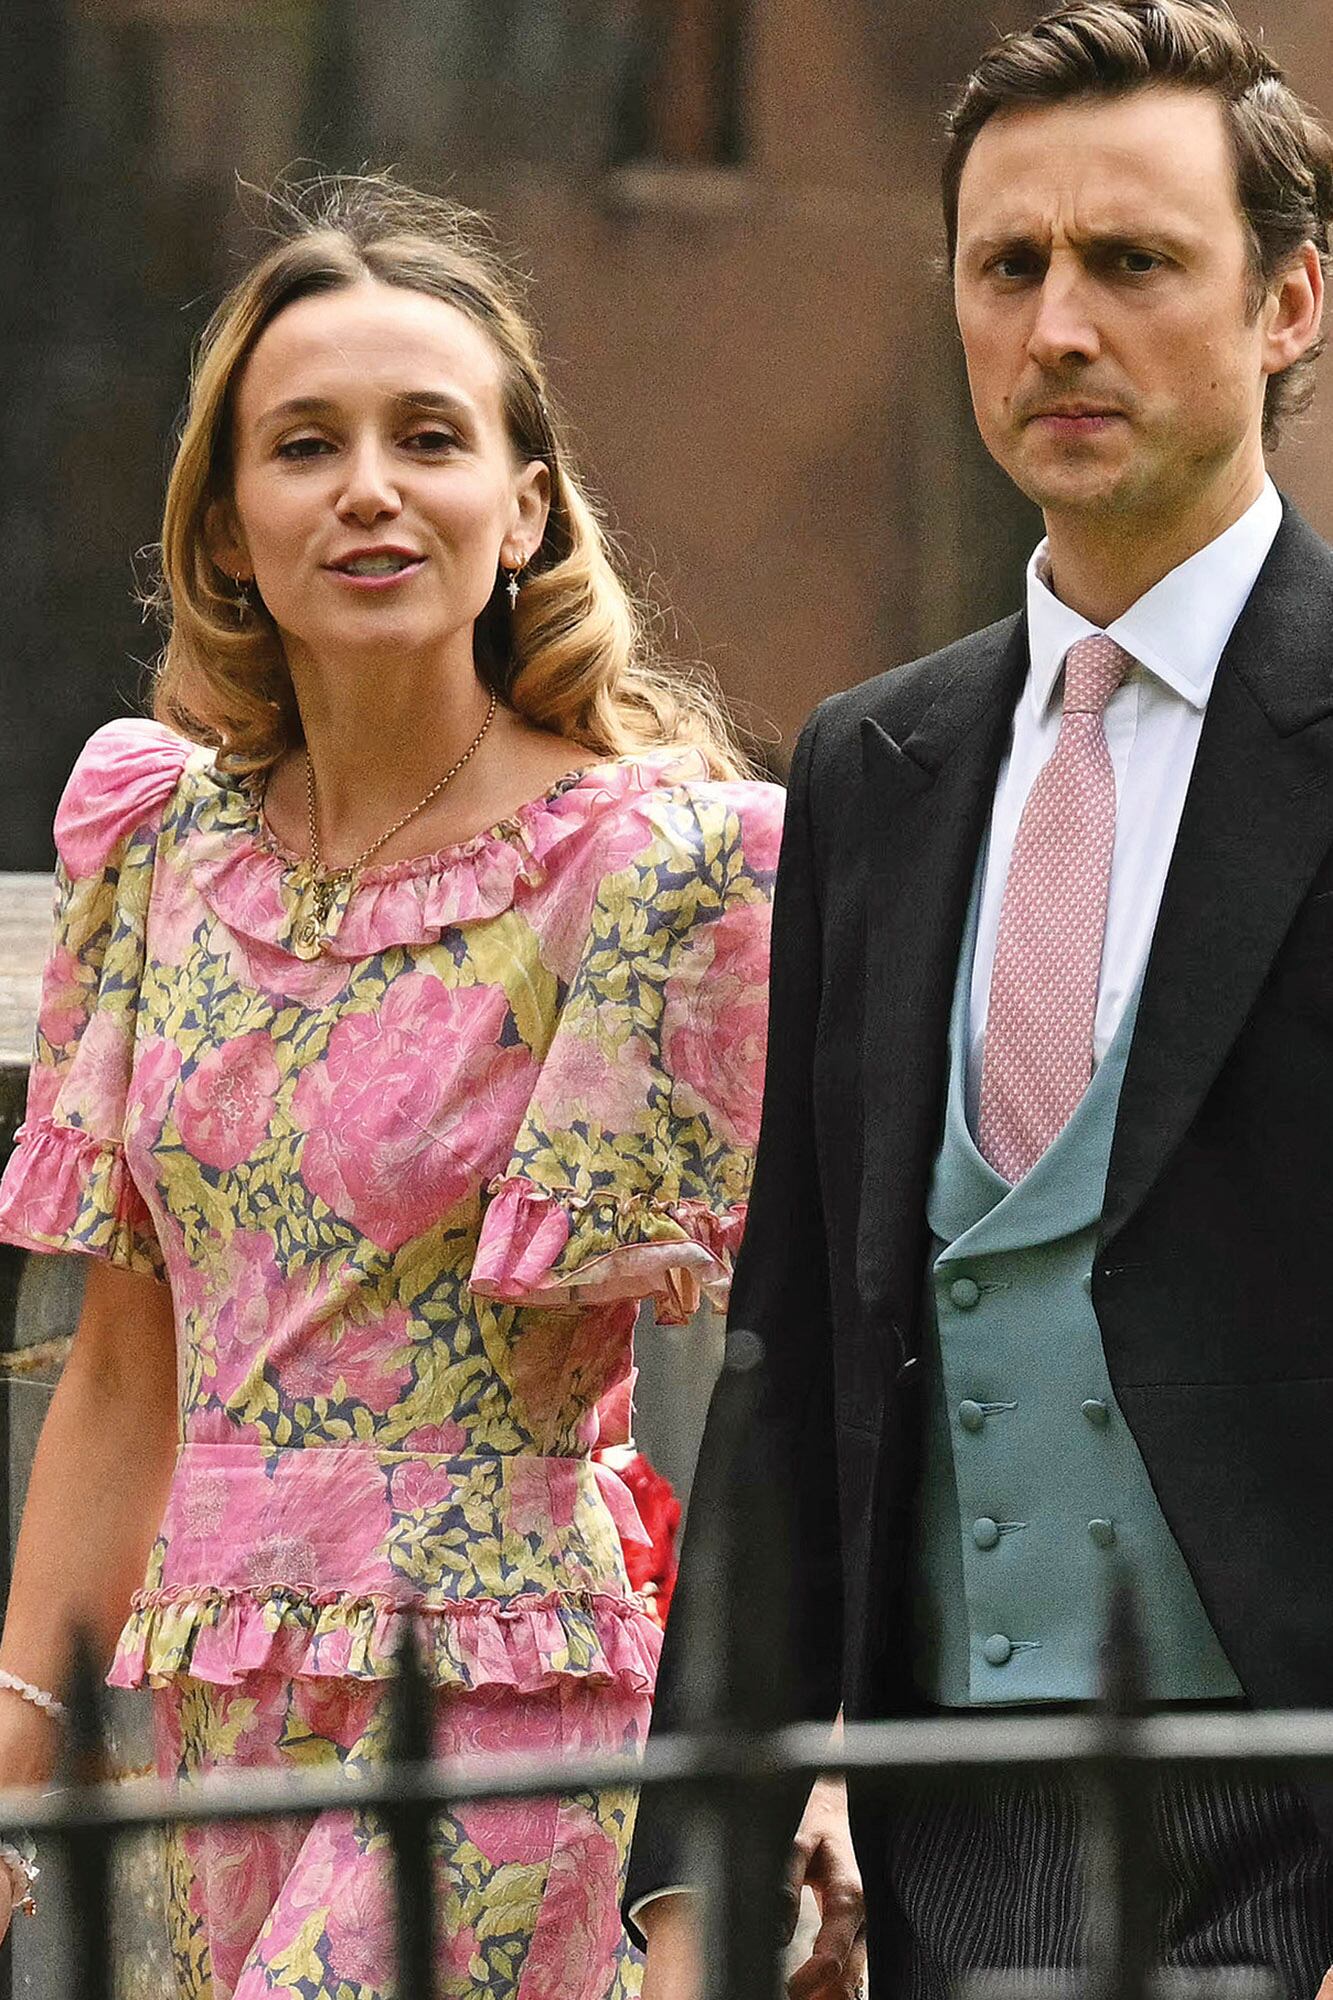 Charlie van Straubenzee, amigo de la infancia del príncipe Harry –quien no estuvo presente–, junto a su esposa Daisy (llevó un su vestido rosa de estampado floral y volados). 